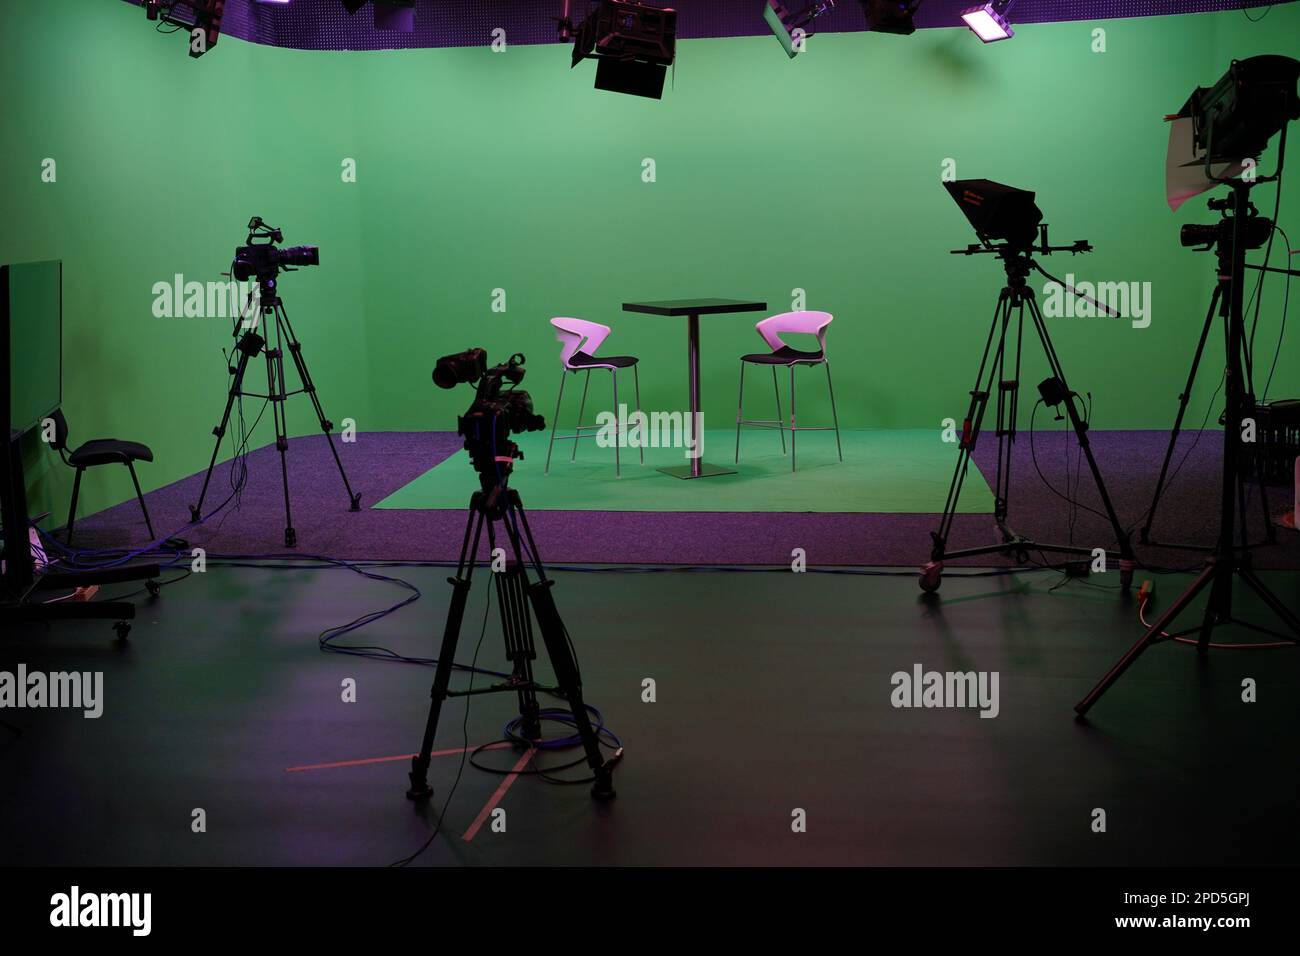 Intérieur moderne du studio de télévision Chroma Key avec écran vert, lumière, équipement de caméra et mobilier. Studio de tournage avec équipement professionnel. Banque D'Images